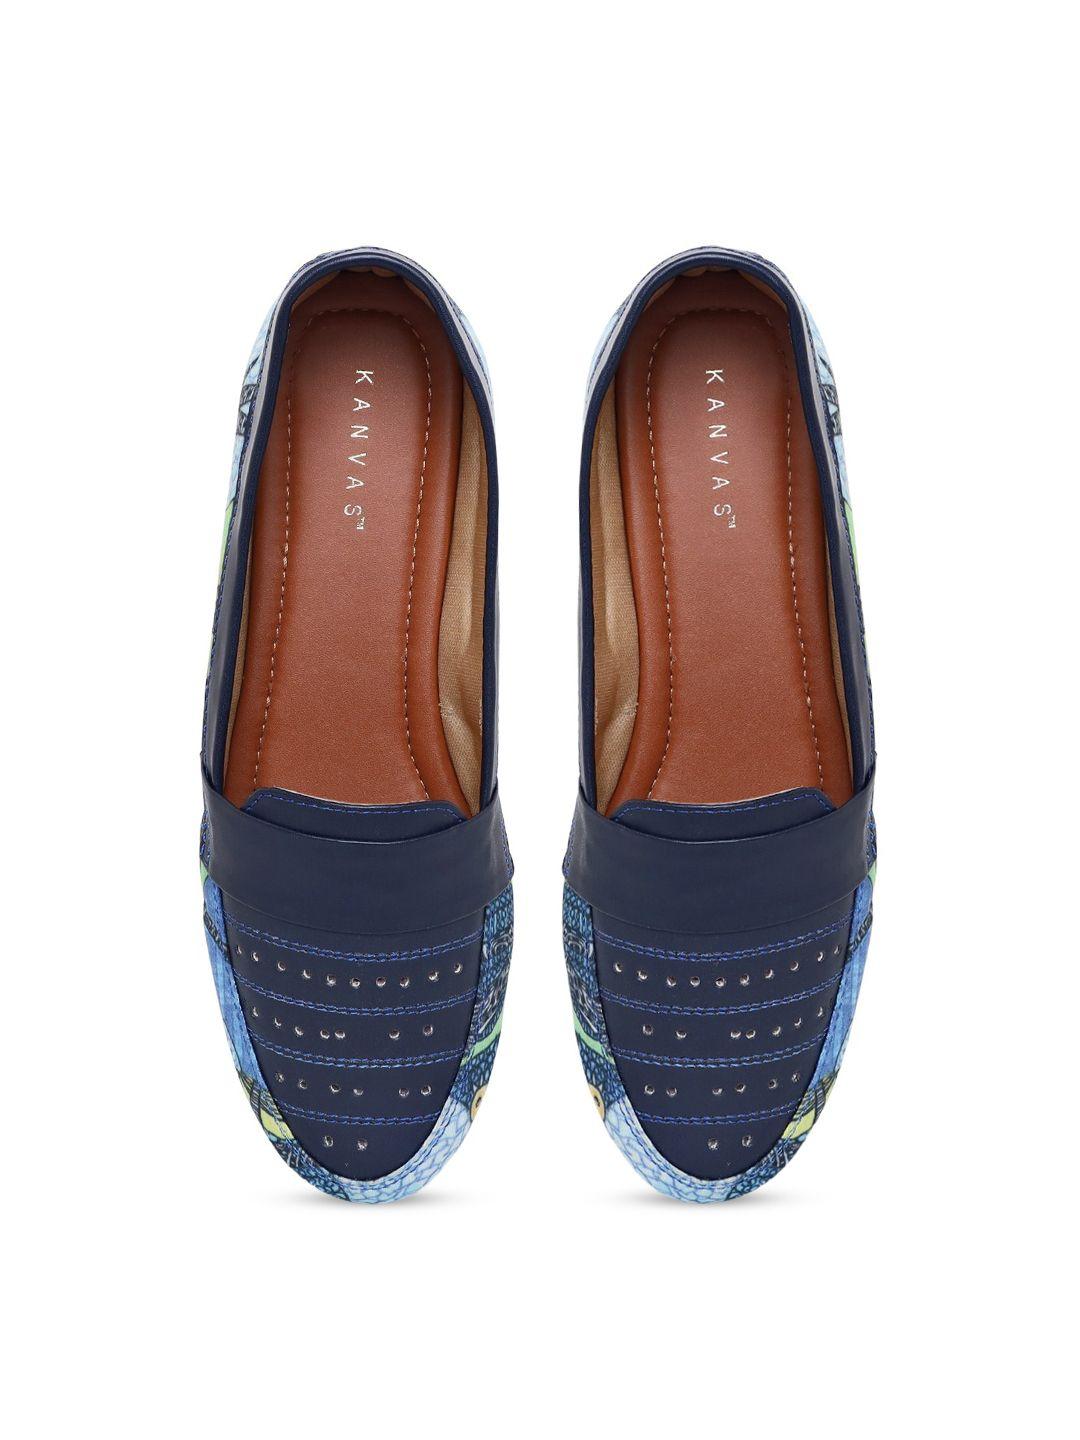 kanvas women blue printed slip-on sneakers